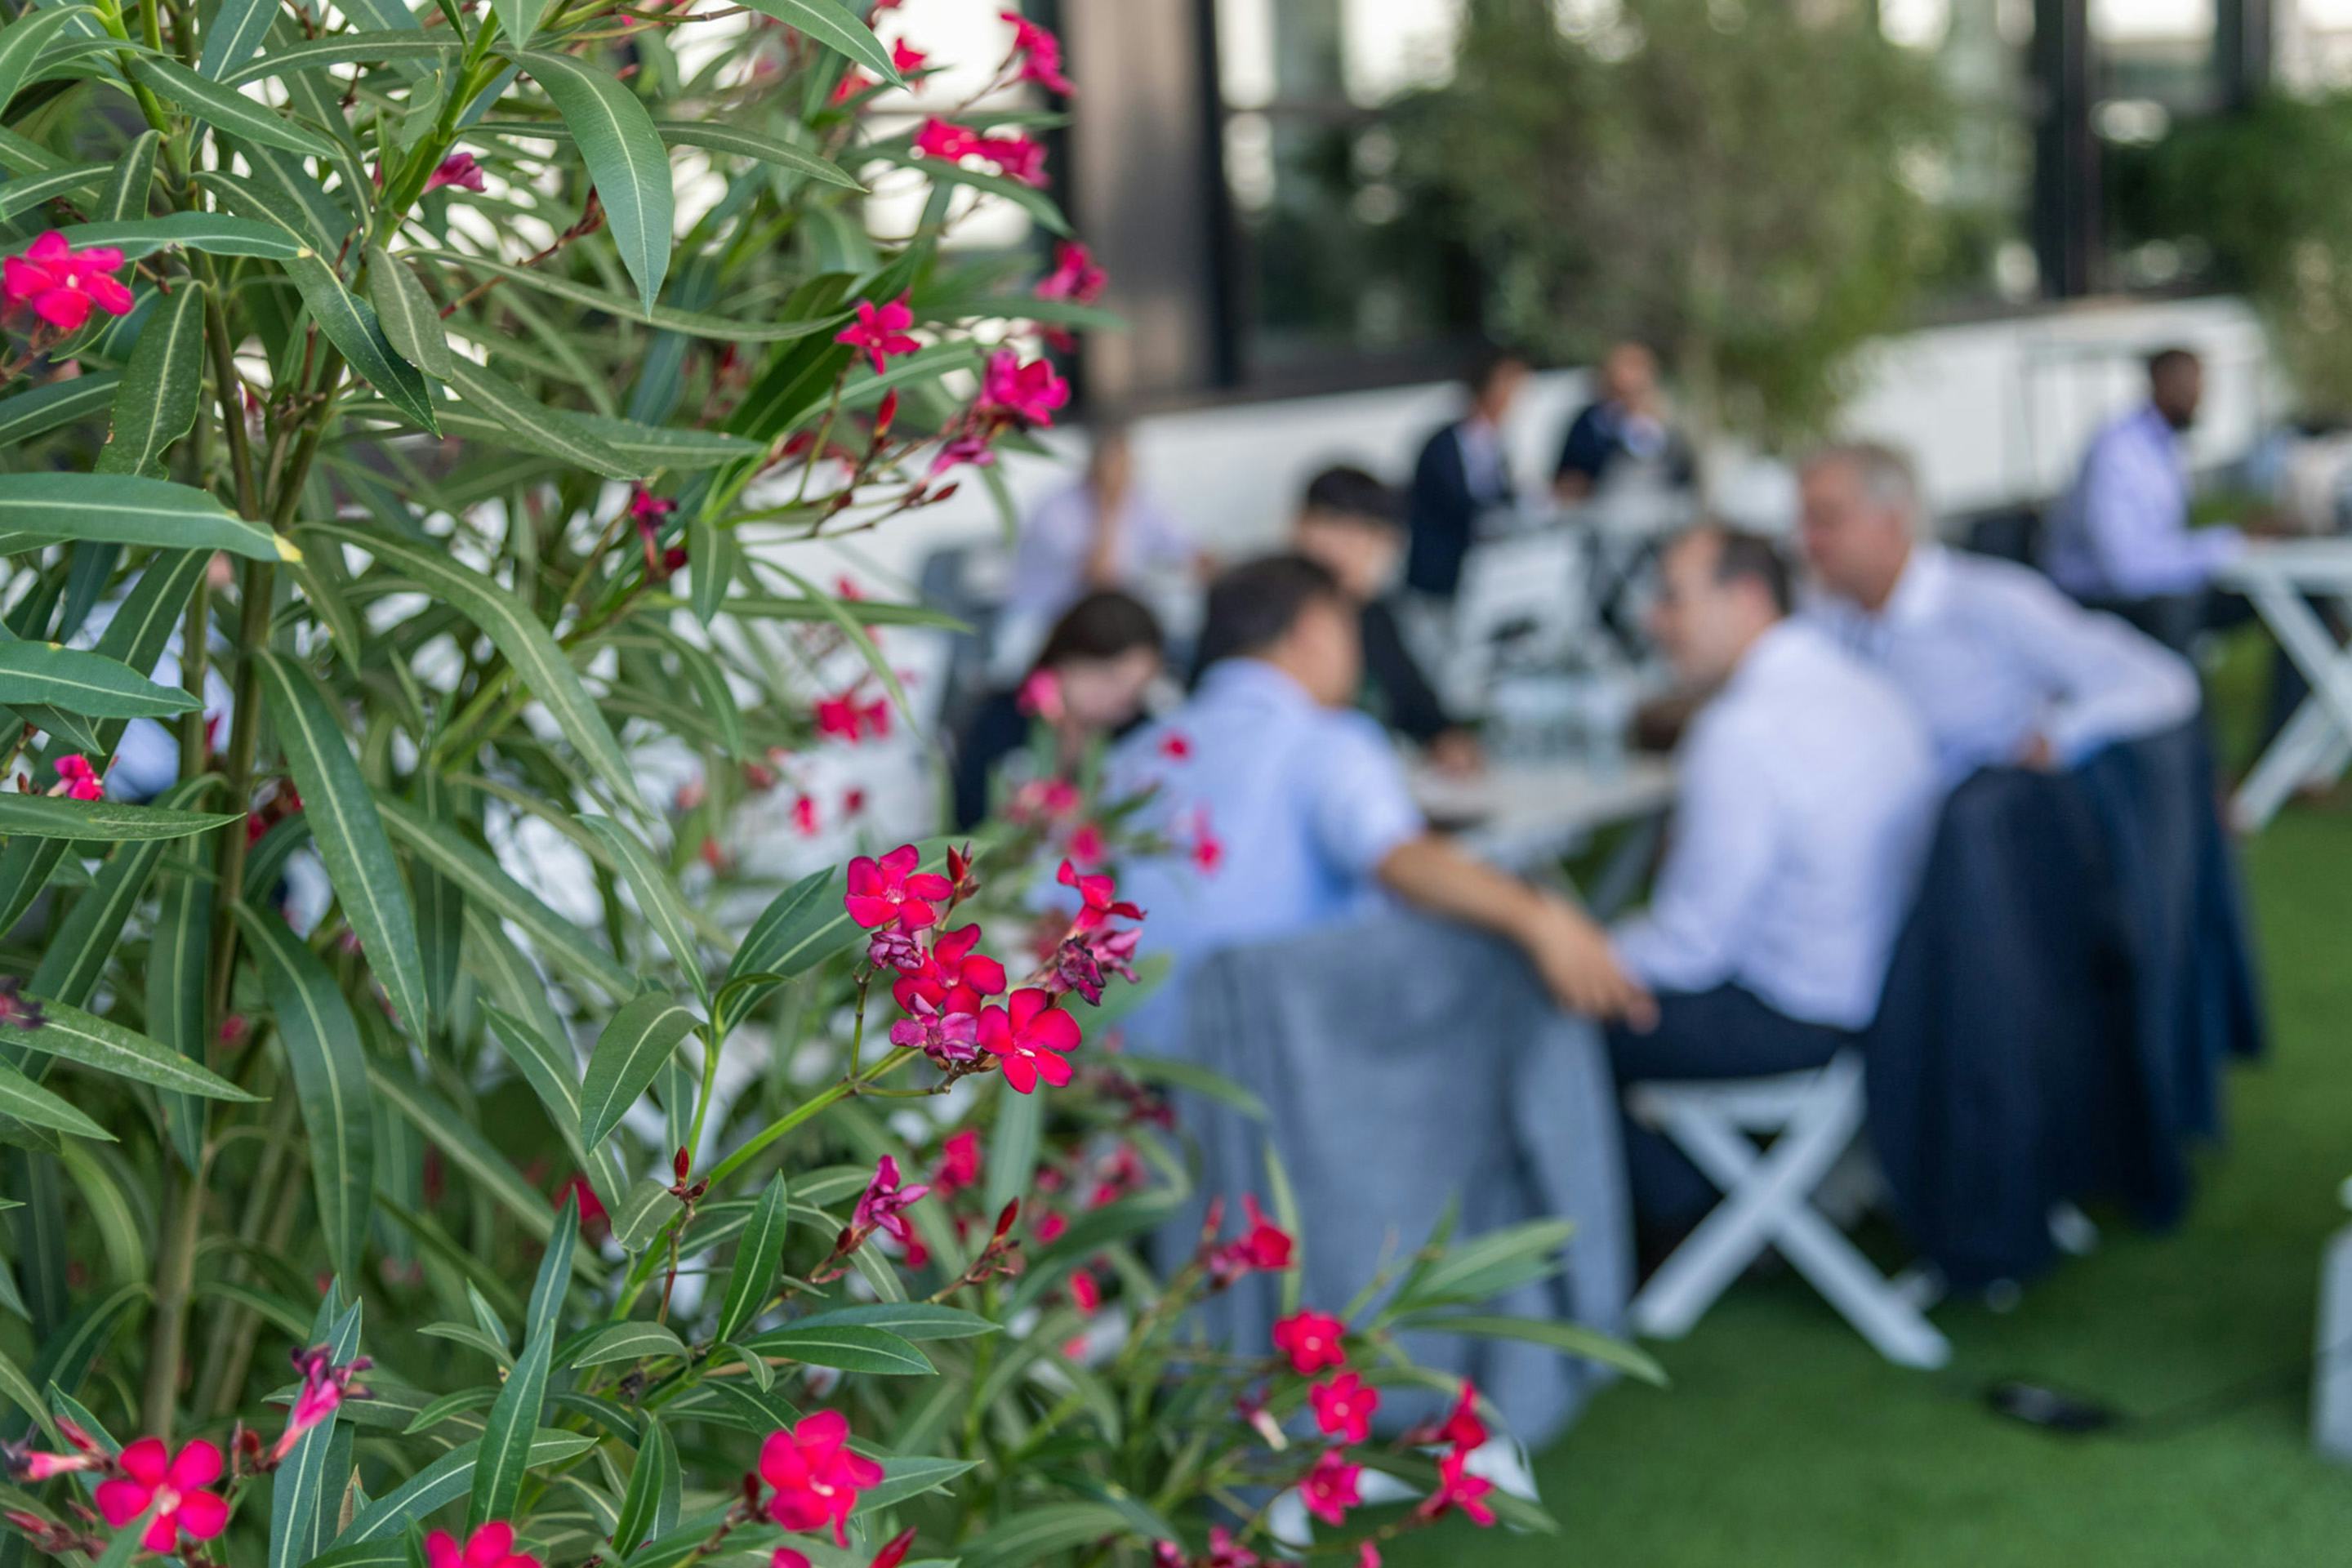 Foto: Orleanderbusch und Tische mit Menschen auf einer Terrasse